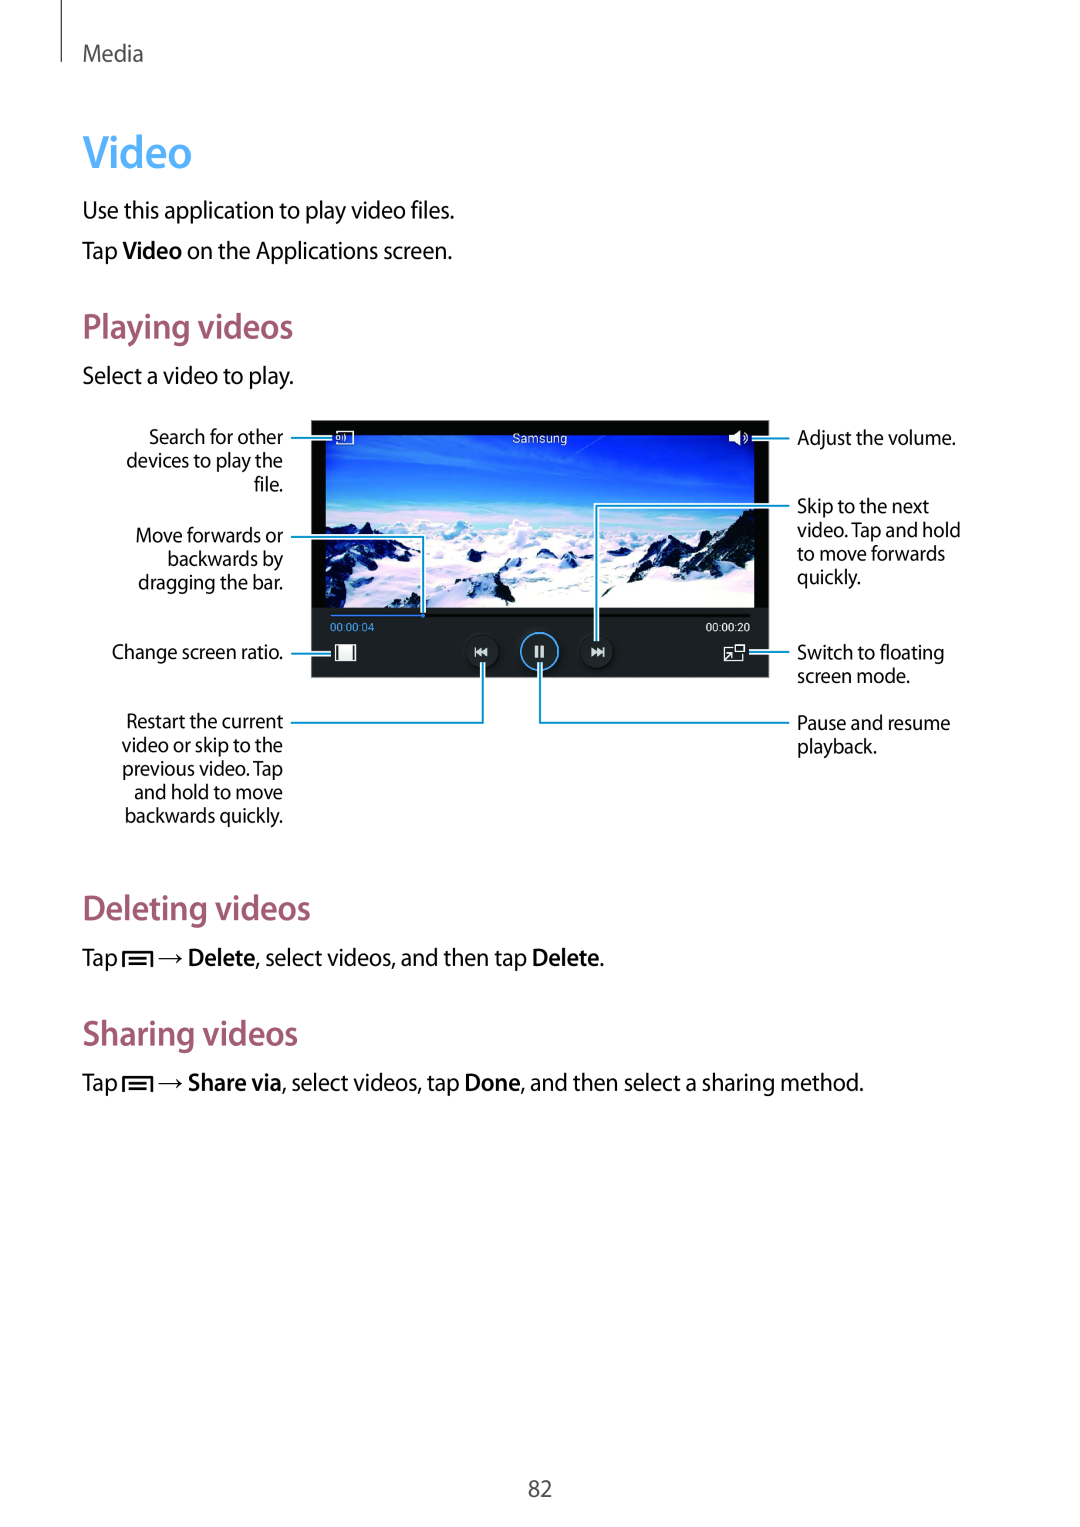 Samsung GT-I9305OKDDBT, GT-I9305OKDTMN, GT-I9305RWDCOS manual Video, Deleting videos, Sharing videos, Playing videos, Media 